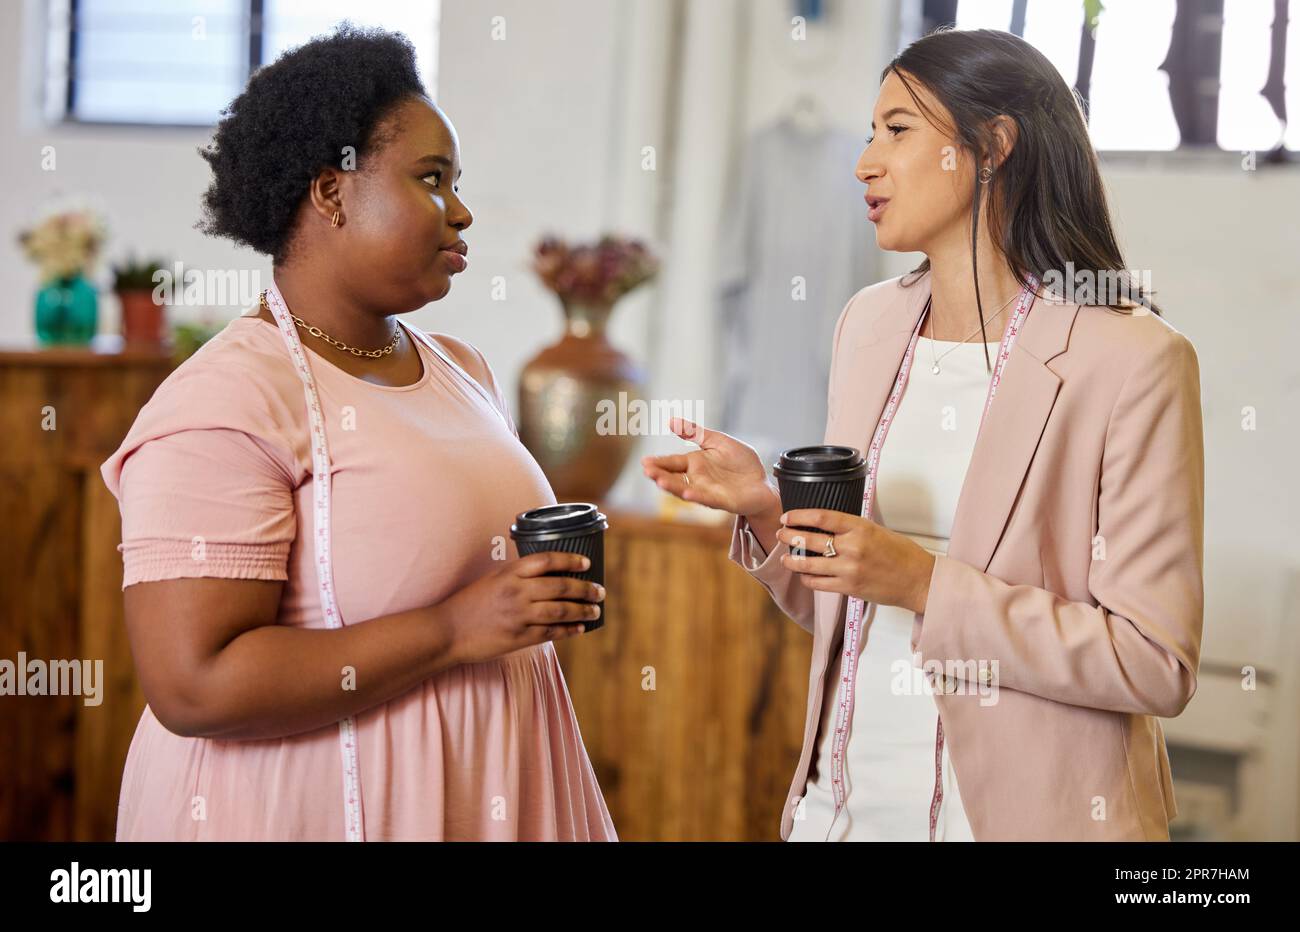 Denken wir über einen zweiten Standort nach: Zwei attraktive junge Geschäftseigentümerinnen, die Kaffee trinken, während sie in ihrem Geschäft stehen. Stockfoto